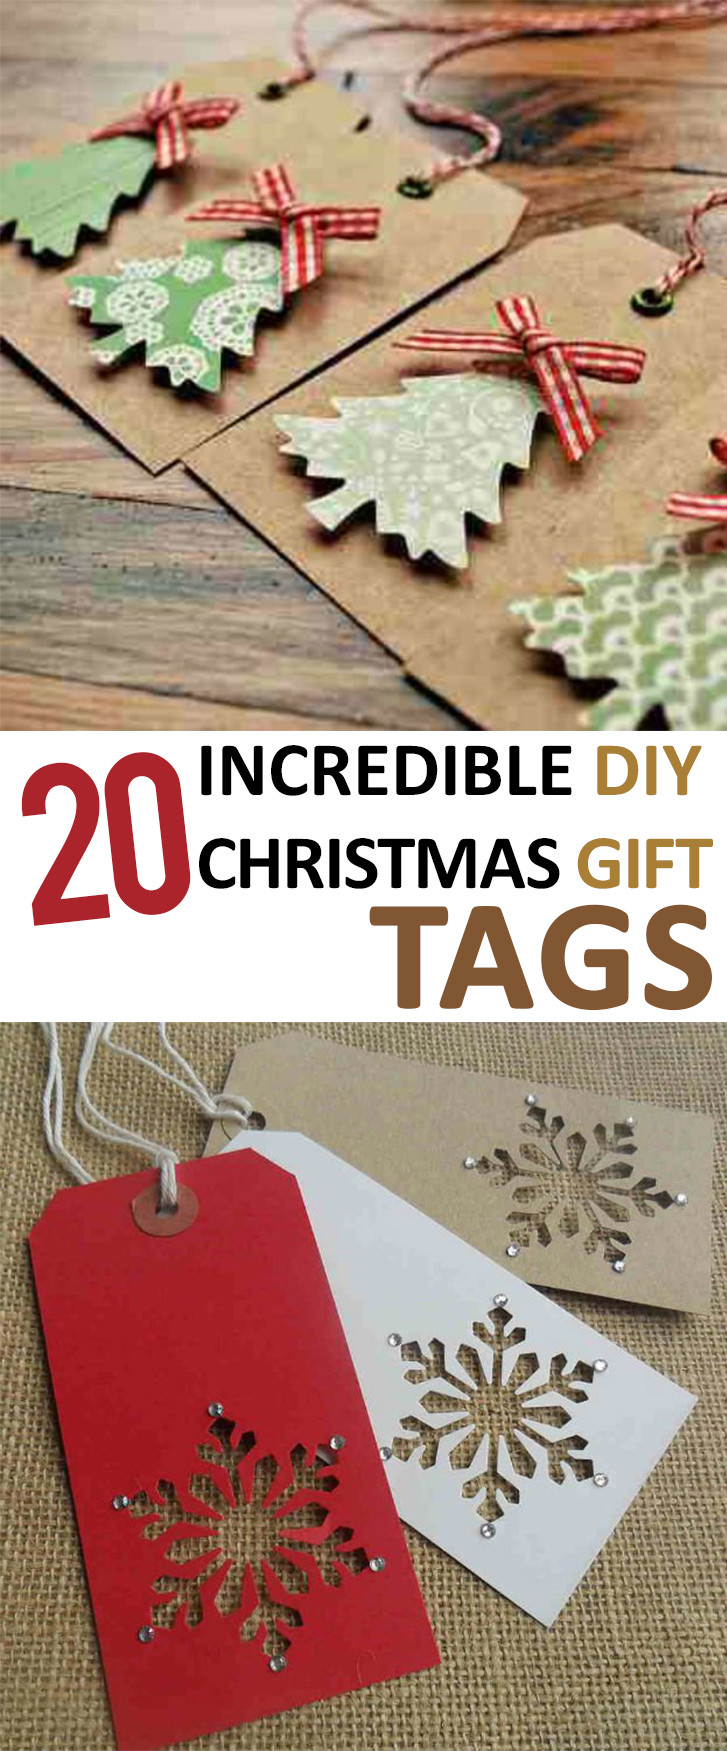 Christmas Gift Tags DIY
 20 Incredible DIY Christmas Gift Tags